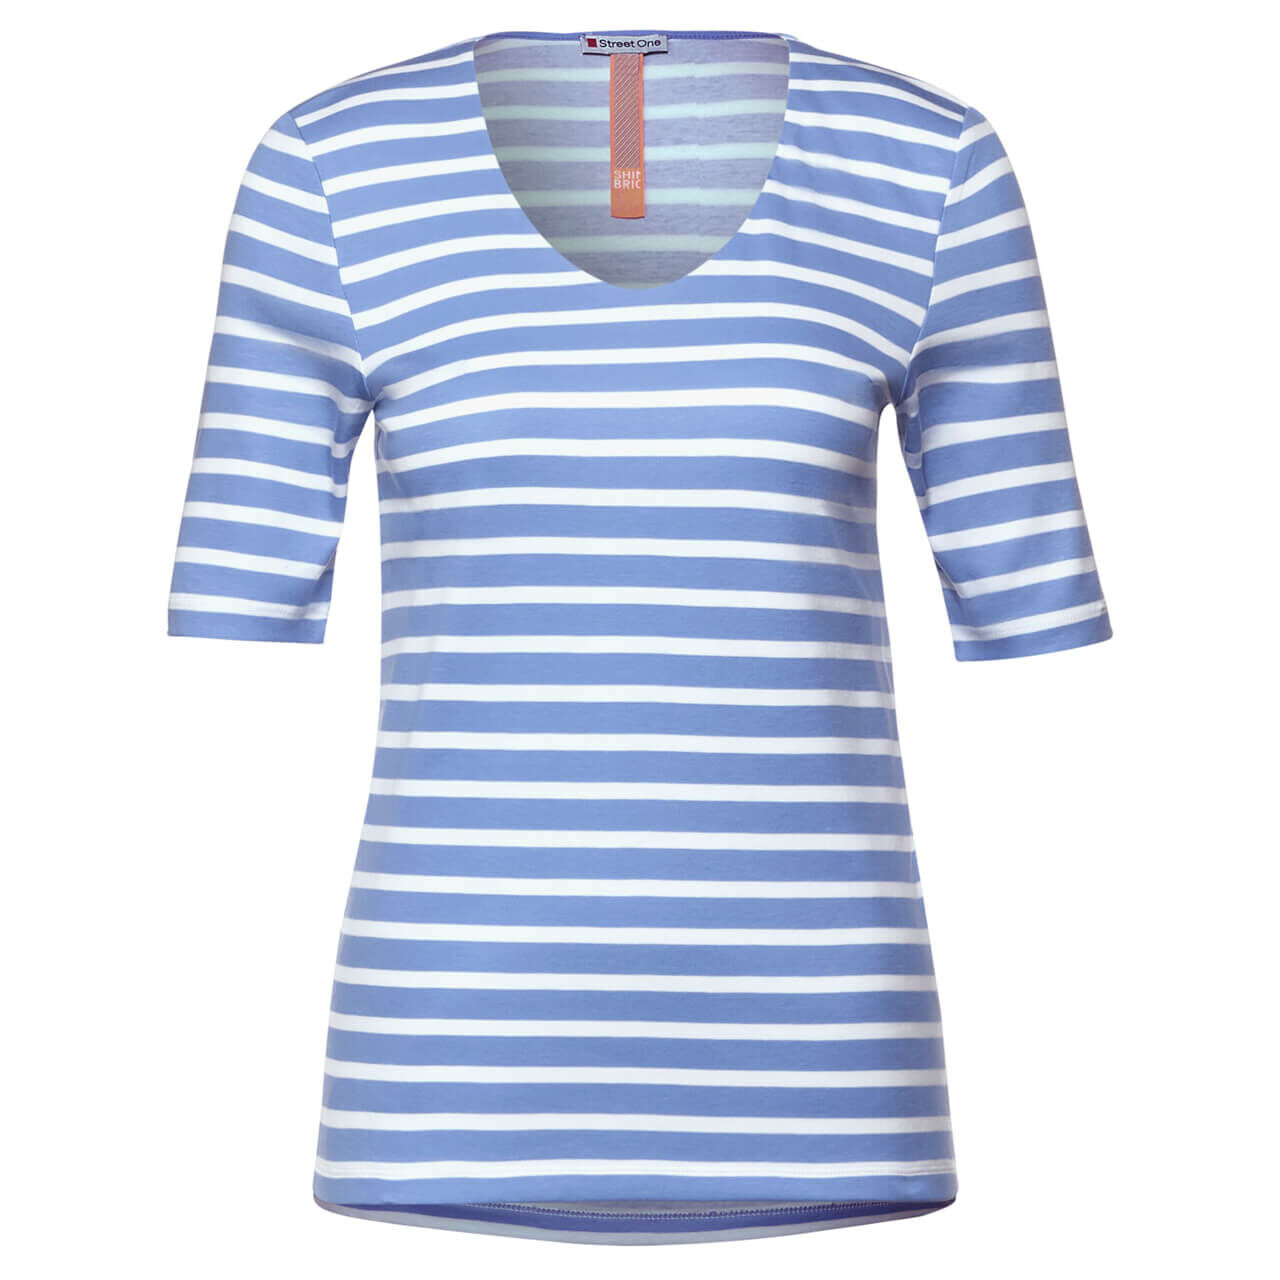 Street One Palmira T-Shirt für Damen in Hellblau gestreift, FarbNr.: 23768